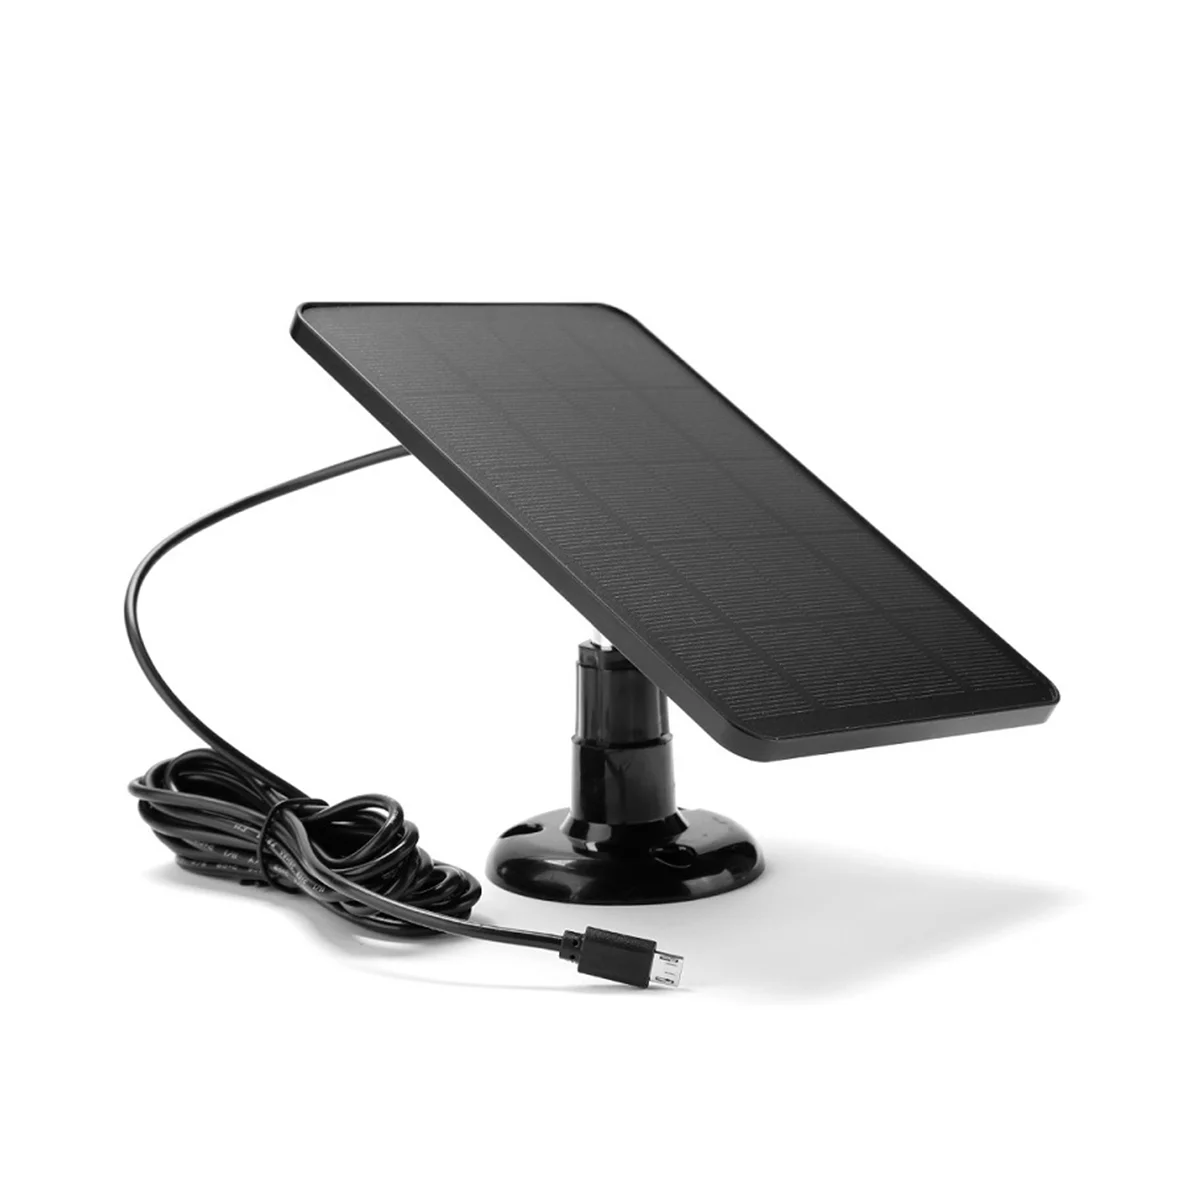 4 W 5 V güneş pilleri şarj USB şarj taşınabilir güneş panelleri için güvenlik kamera / küçük ev ışık sistemi